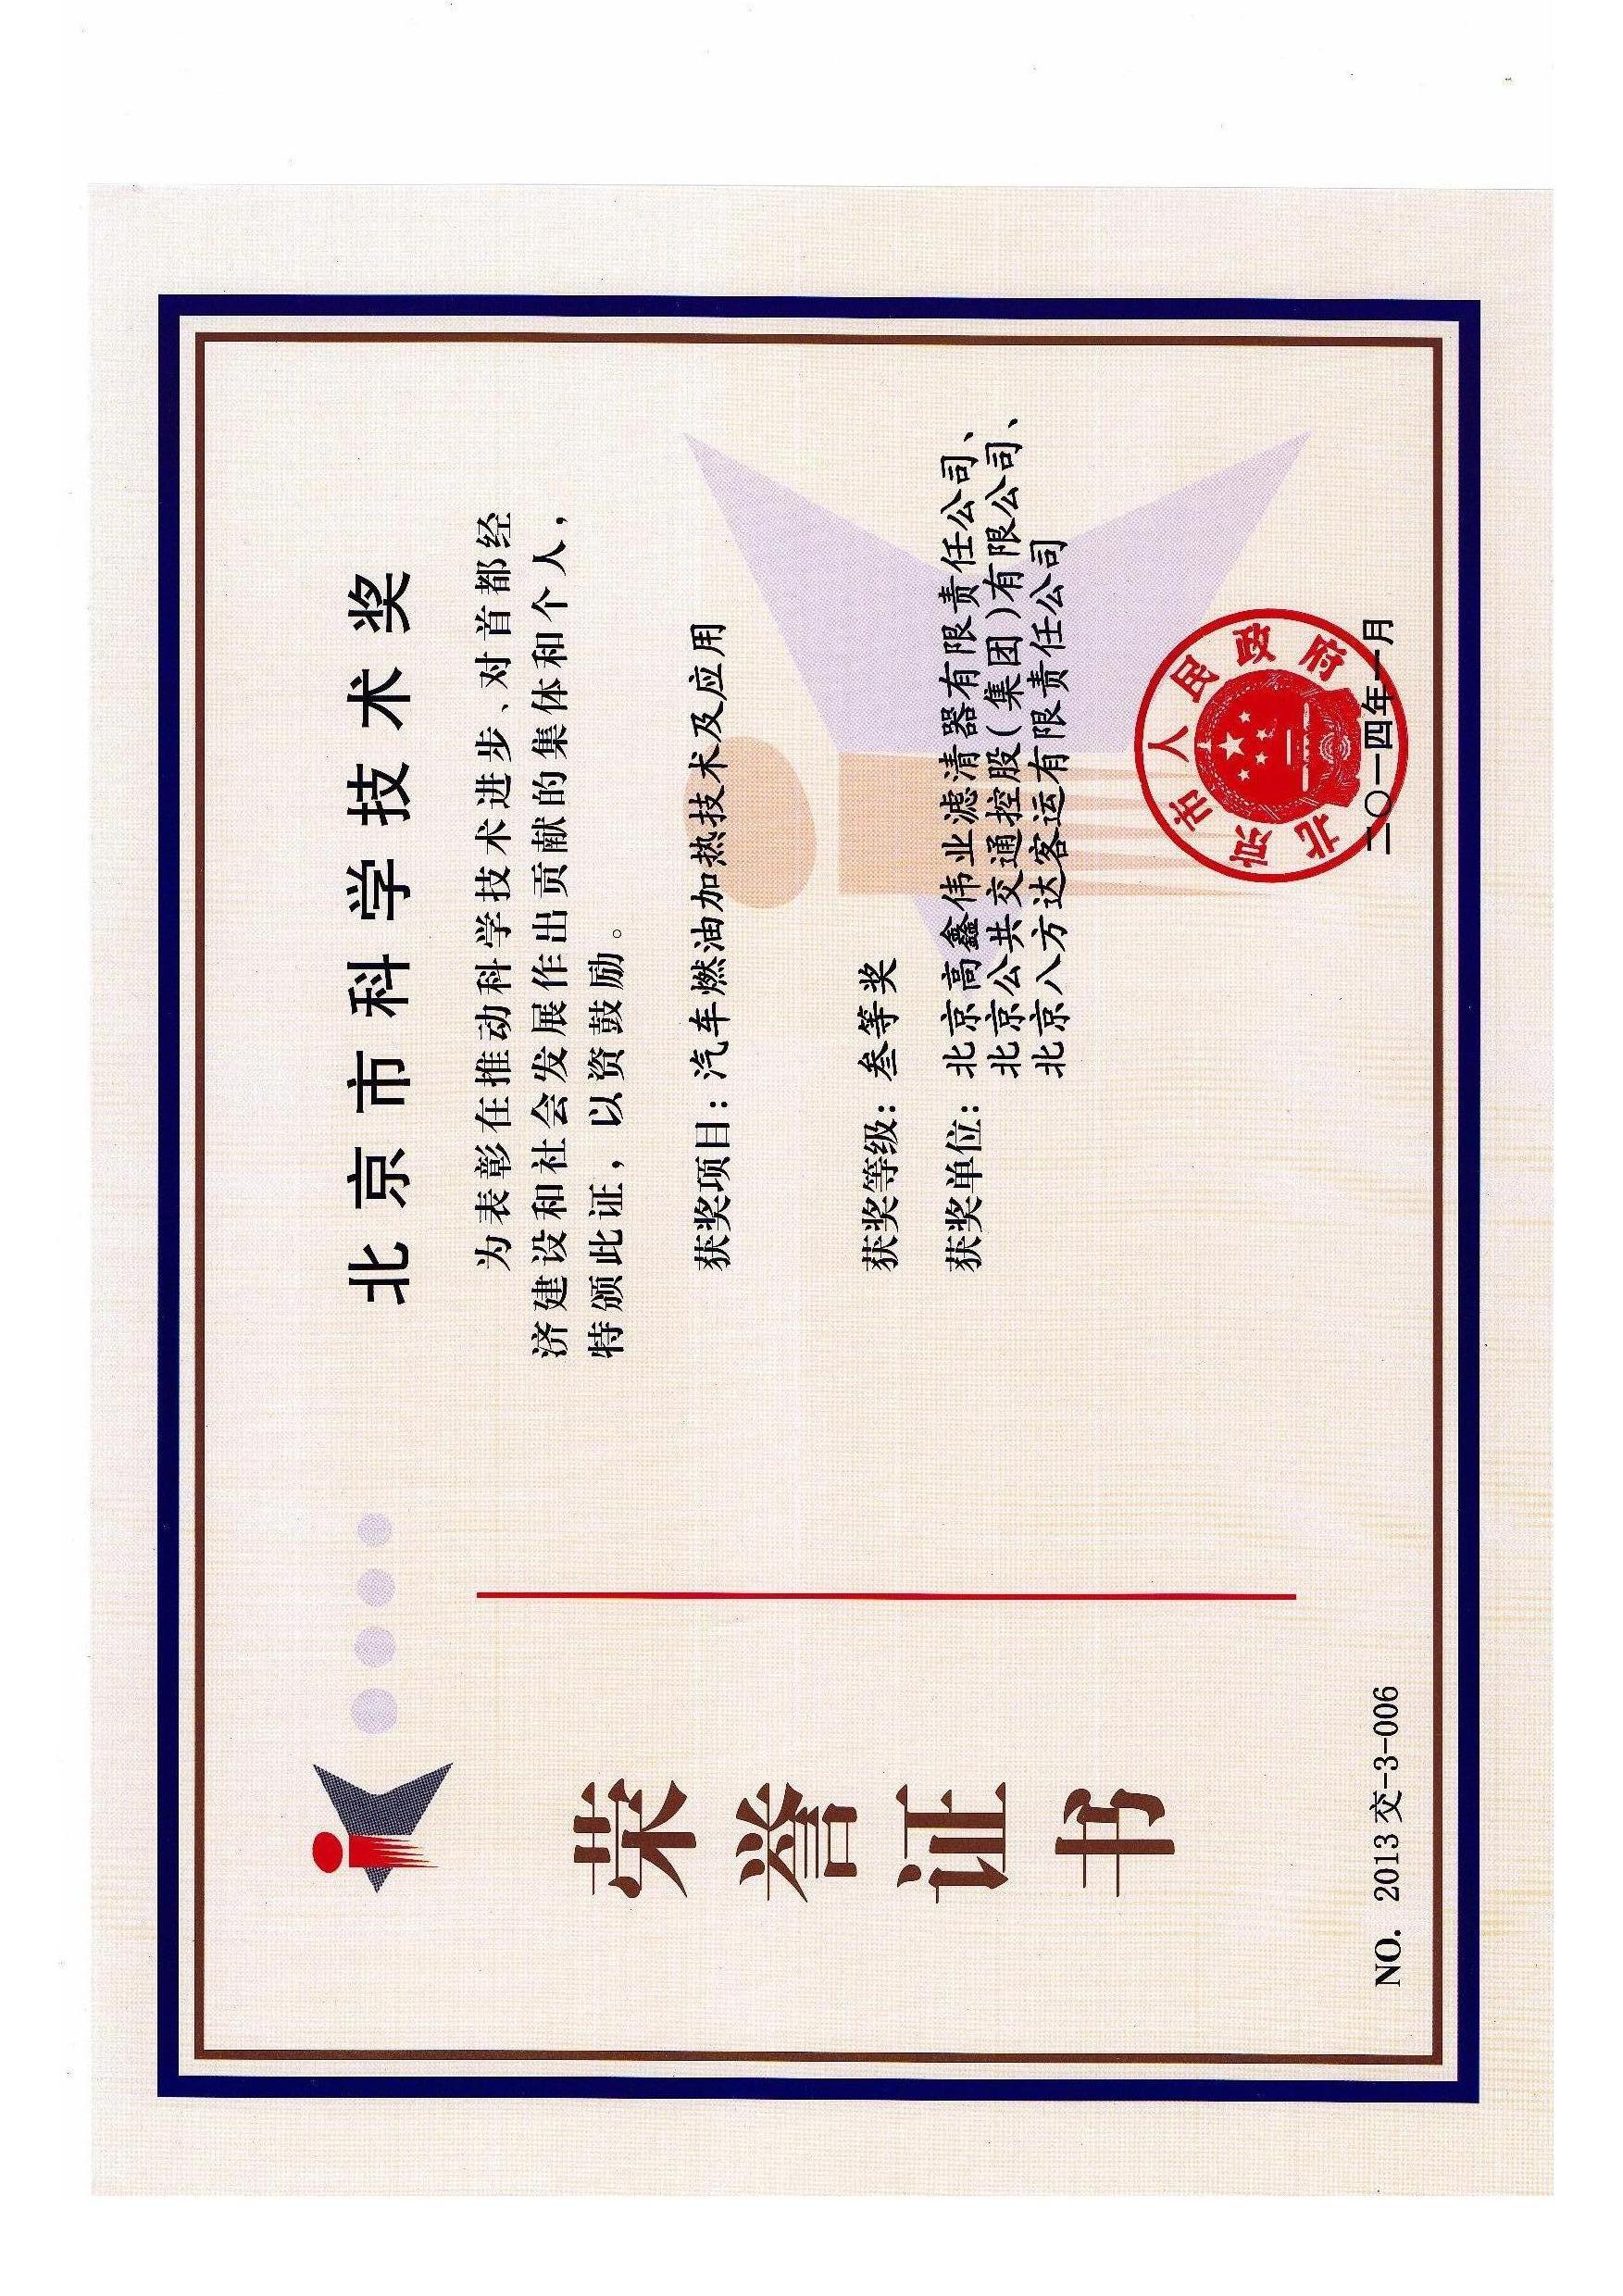 1-单位荣誉证书